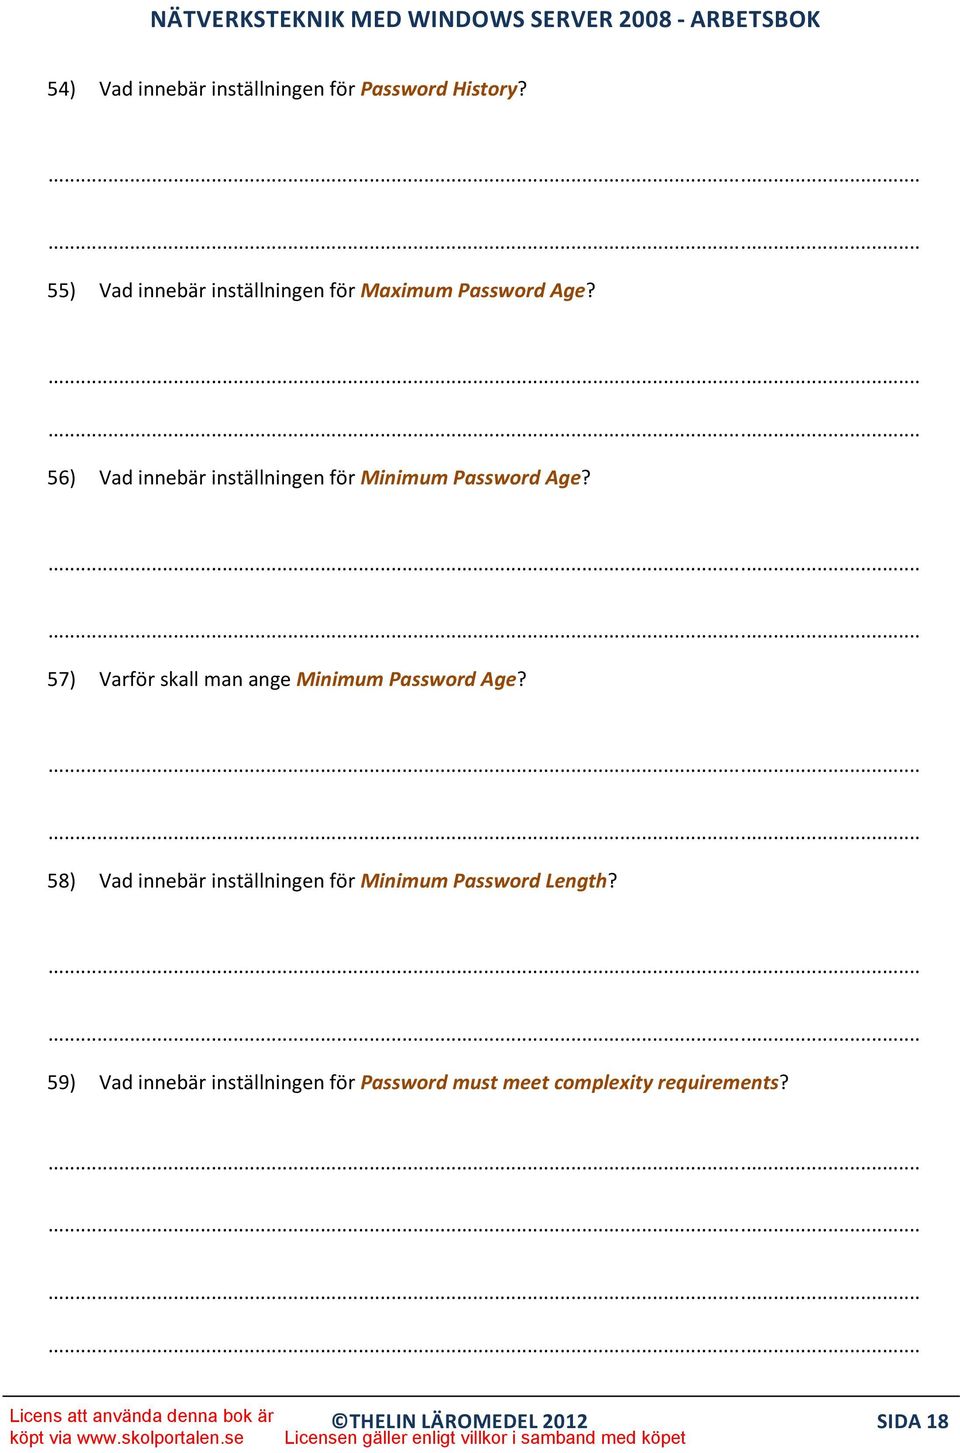 Hur kort tid man kan använda samma lösenord innan man får lov att byta det 57) Varför skall man ange Minimum Password Age?